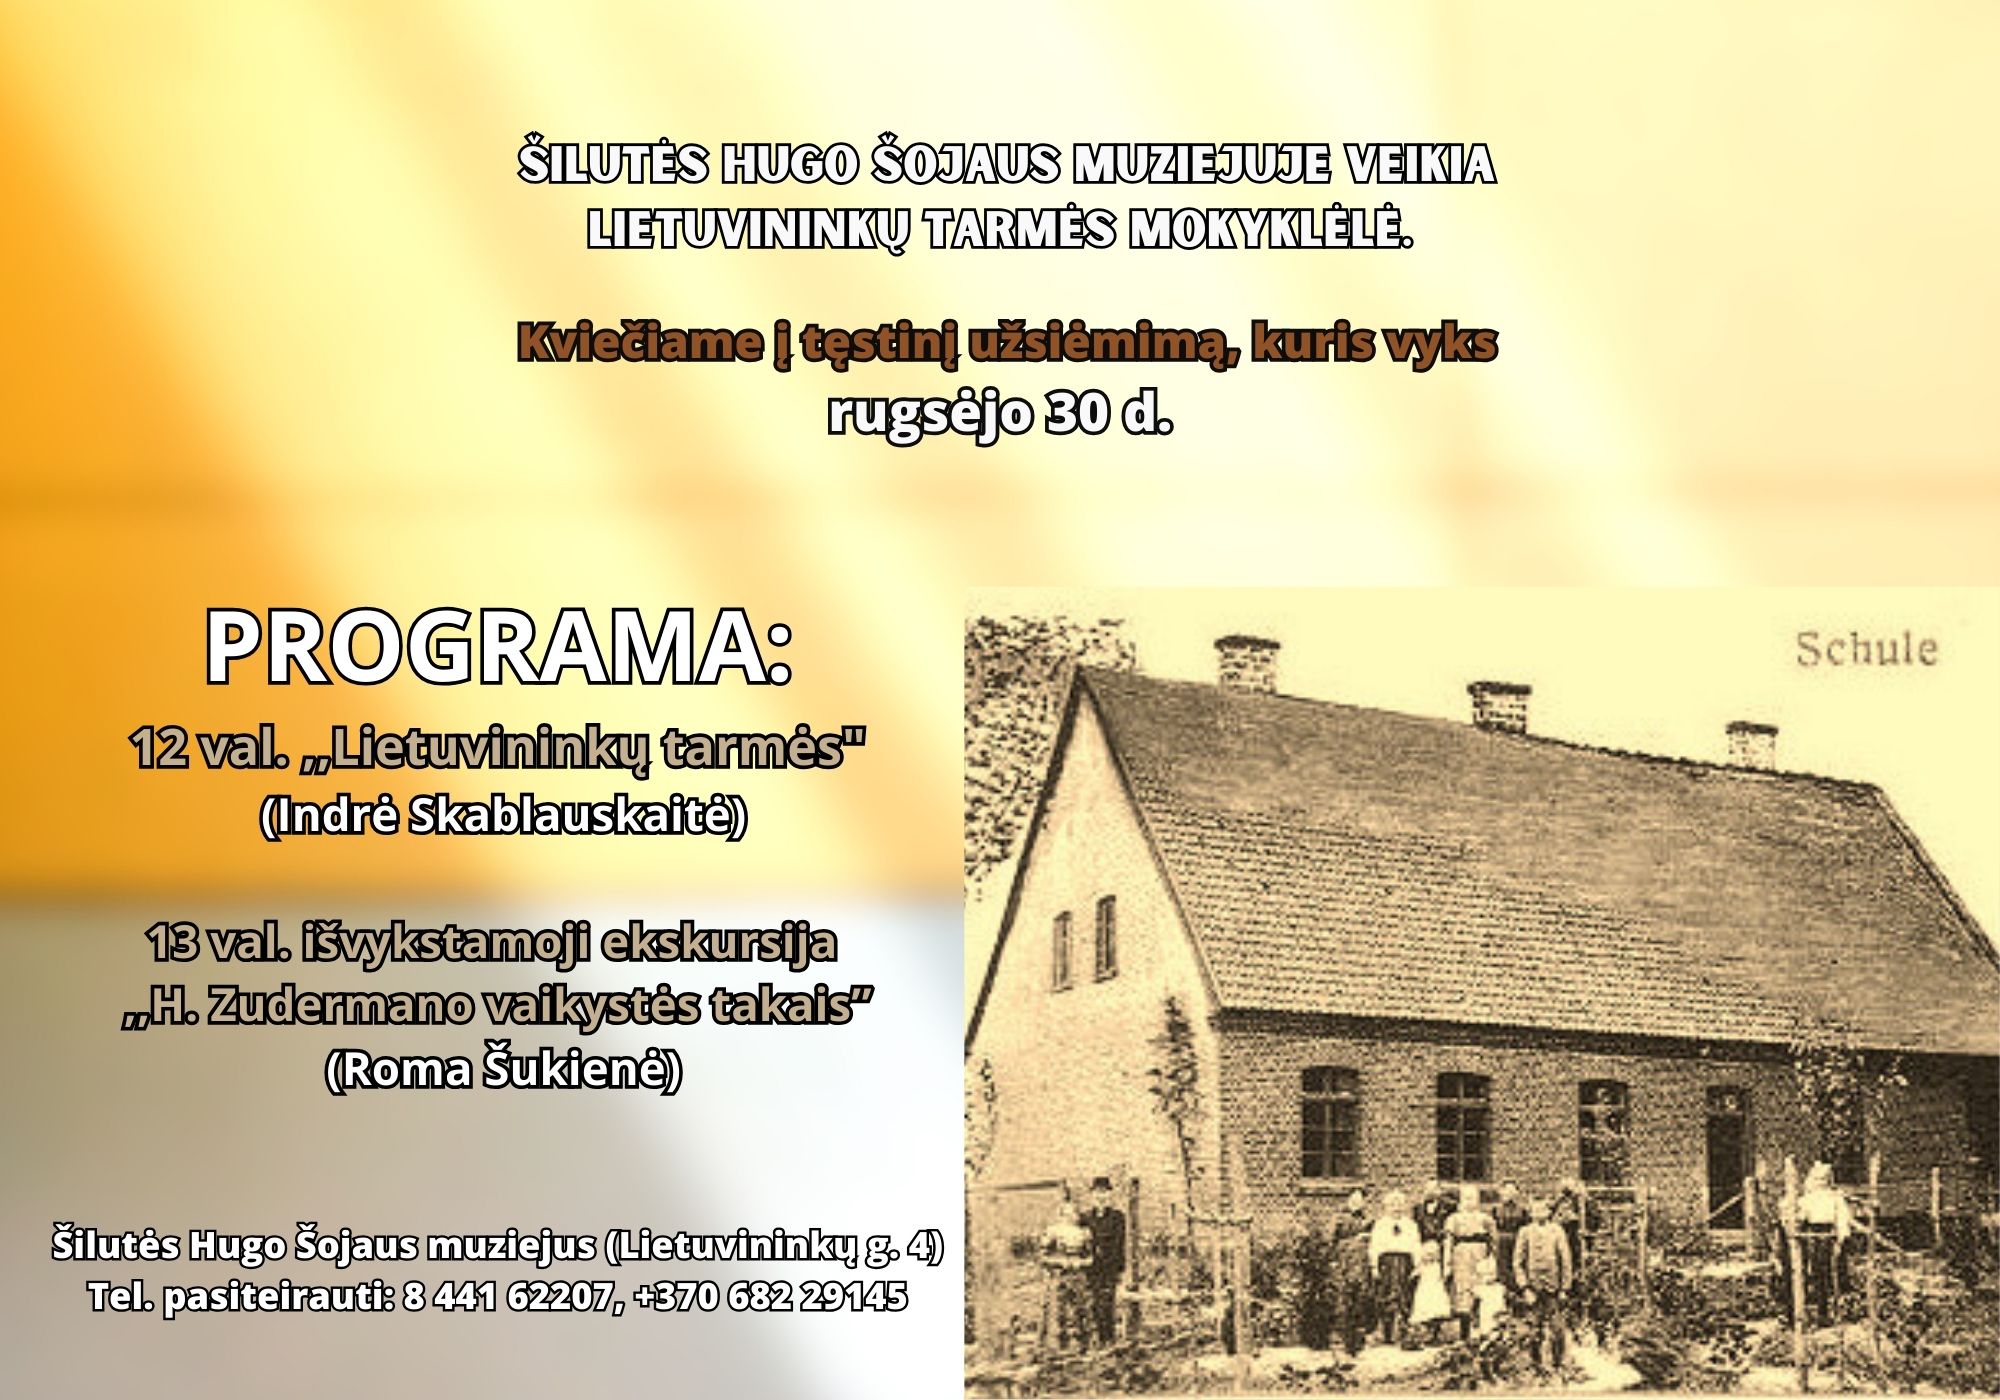 Rugsėjo 30 d. Šilutės Hugo Šojaus muziejuje vyks lietuvininkų tarmės mokyklėlės tęstinis užsiėmimas